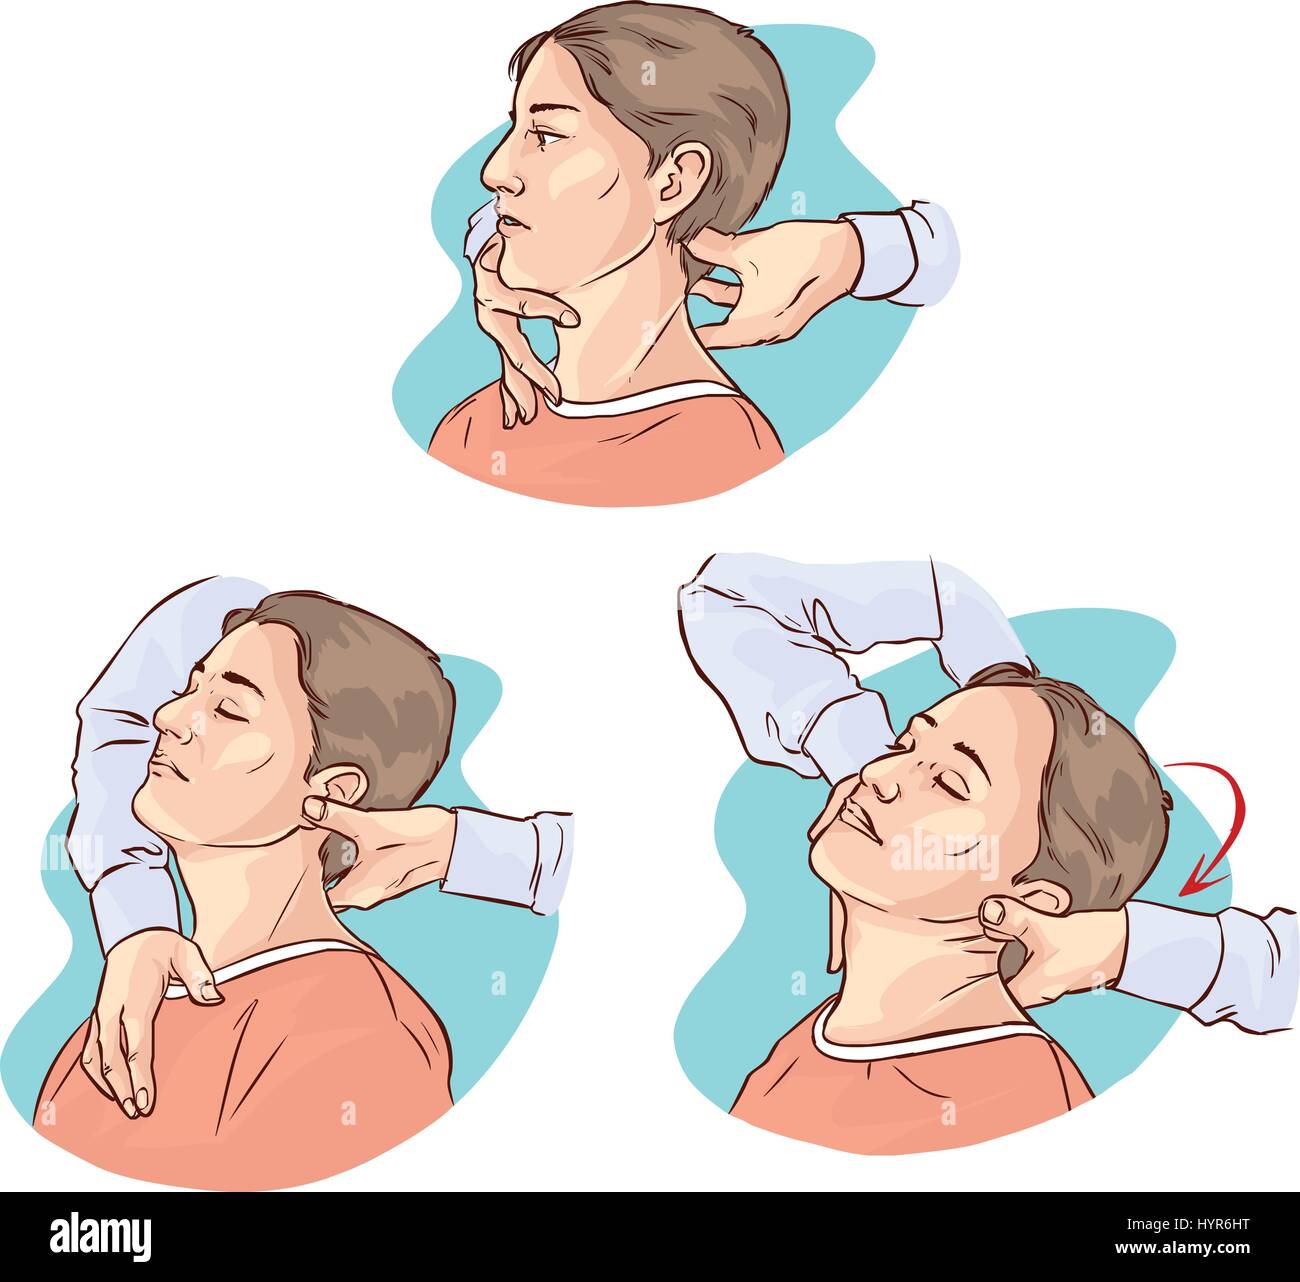 Illustrazione vettoriale di un gonstead chiropratica per acuti dolori al collo Illustrazione Vettoriale